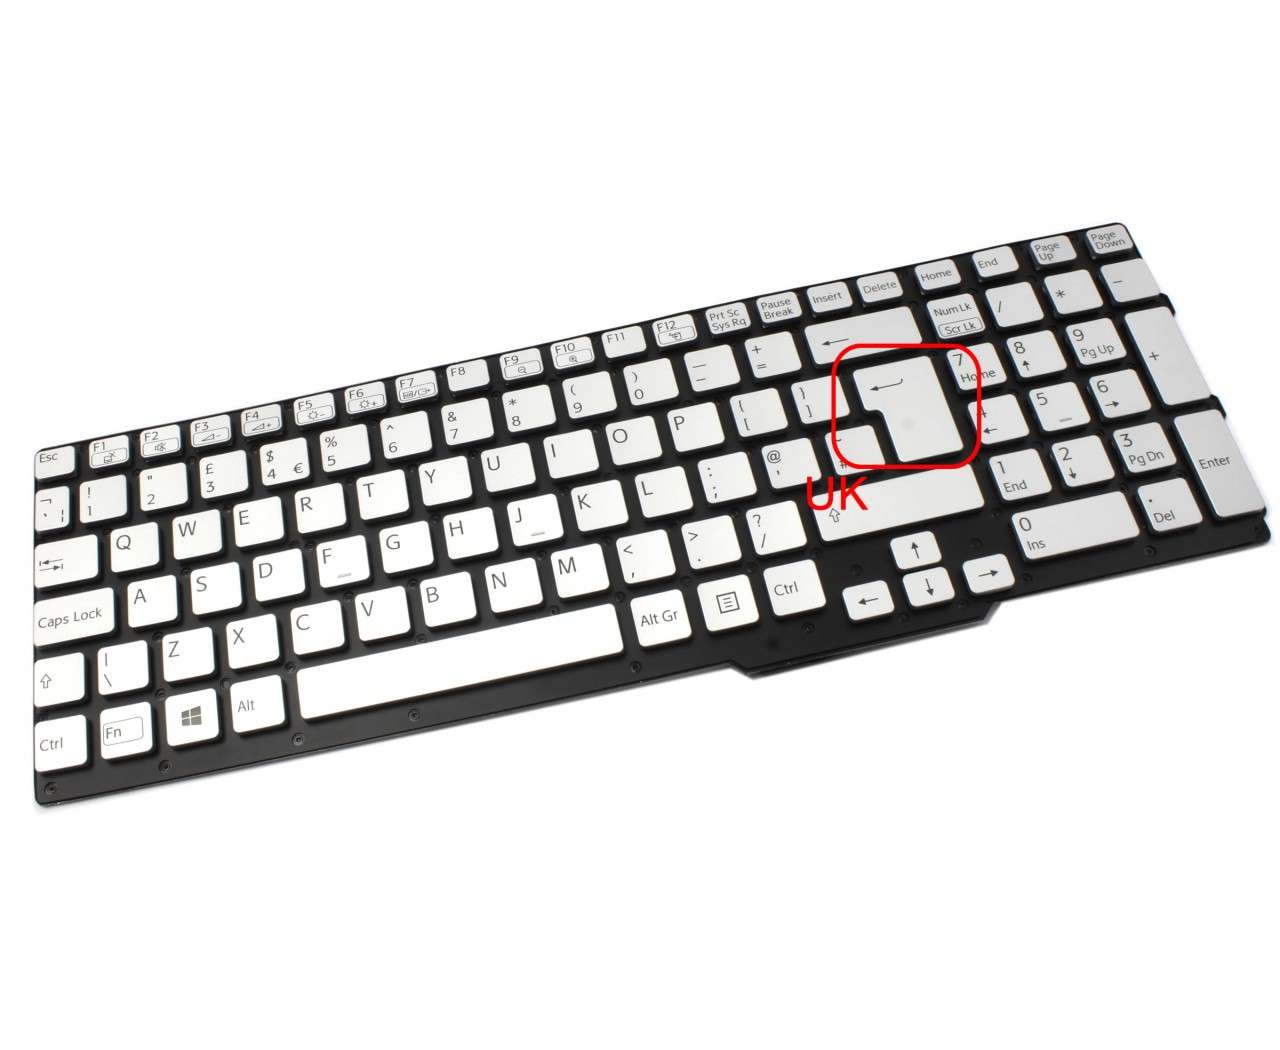 Tastatura argintie Sony Vaio SVS151200C iluminata layout UK fara rama enter mare argintie argintie